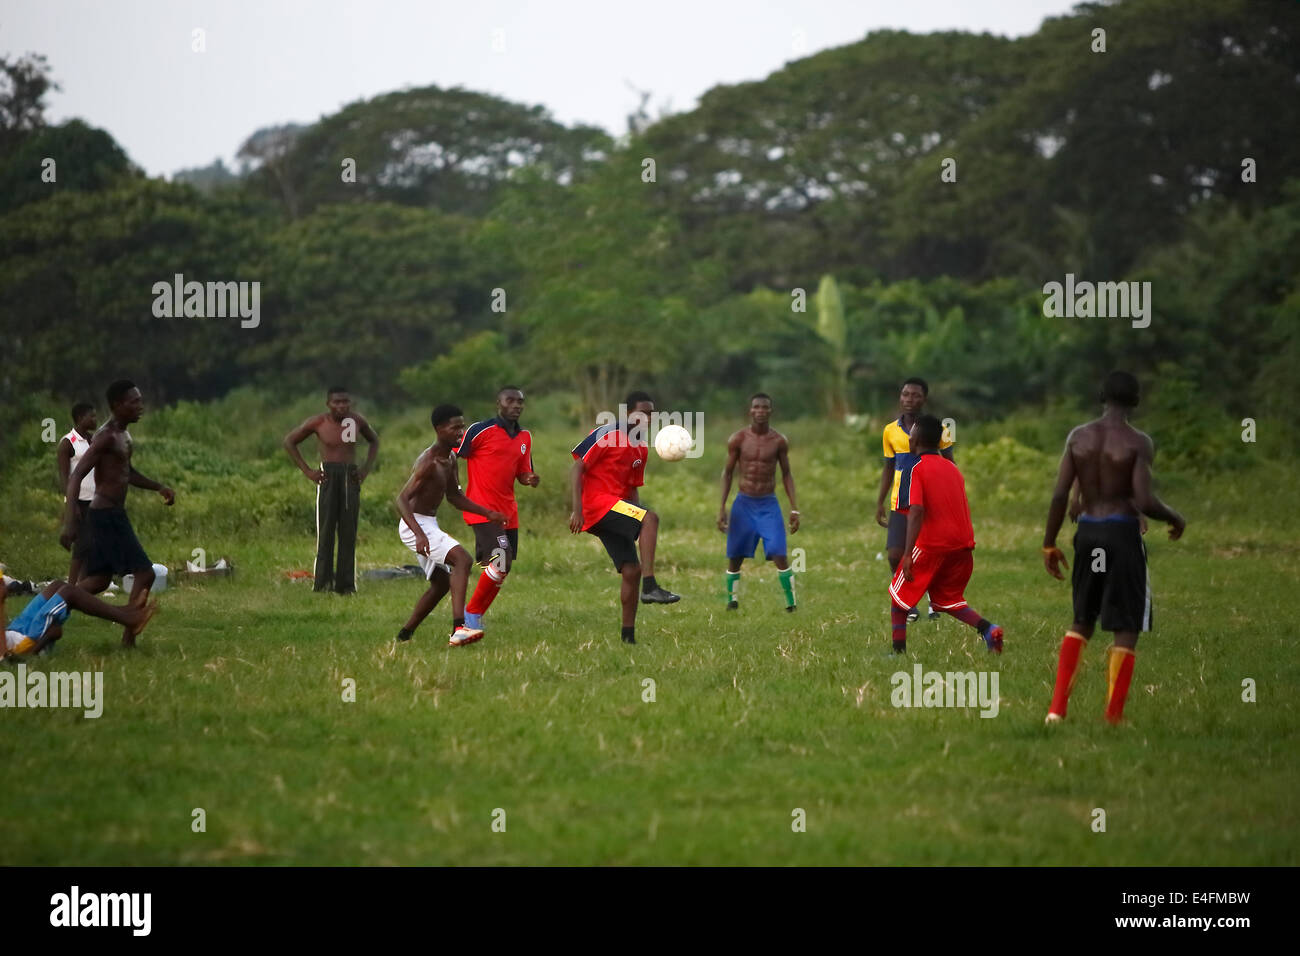 Equipo de fútbol africano durante un entrenamiento de fútbol Foto de stock